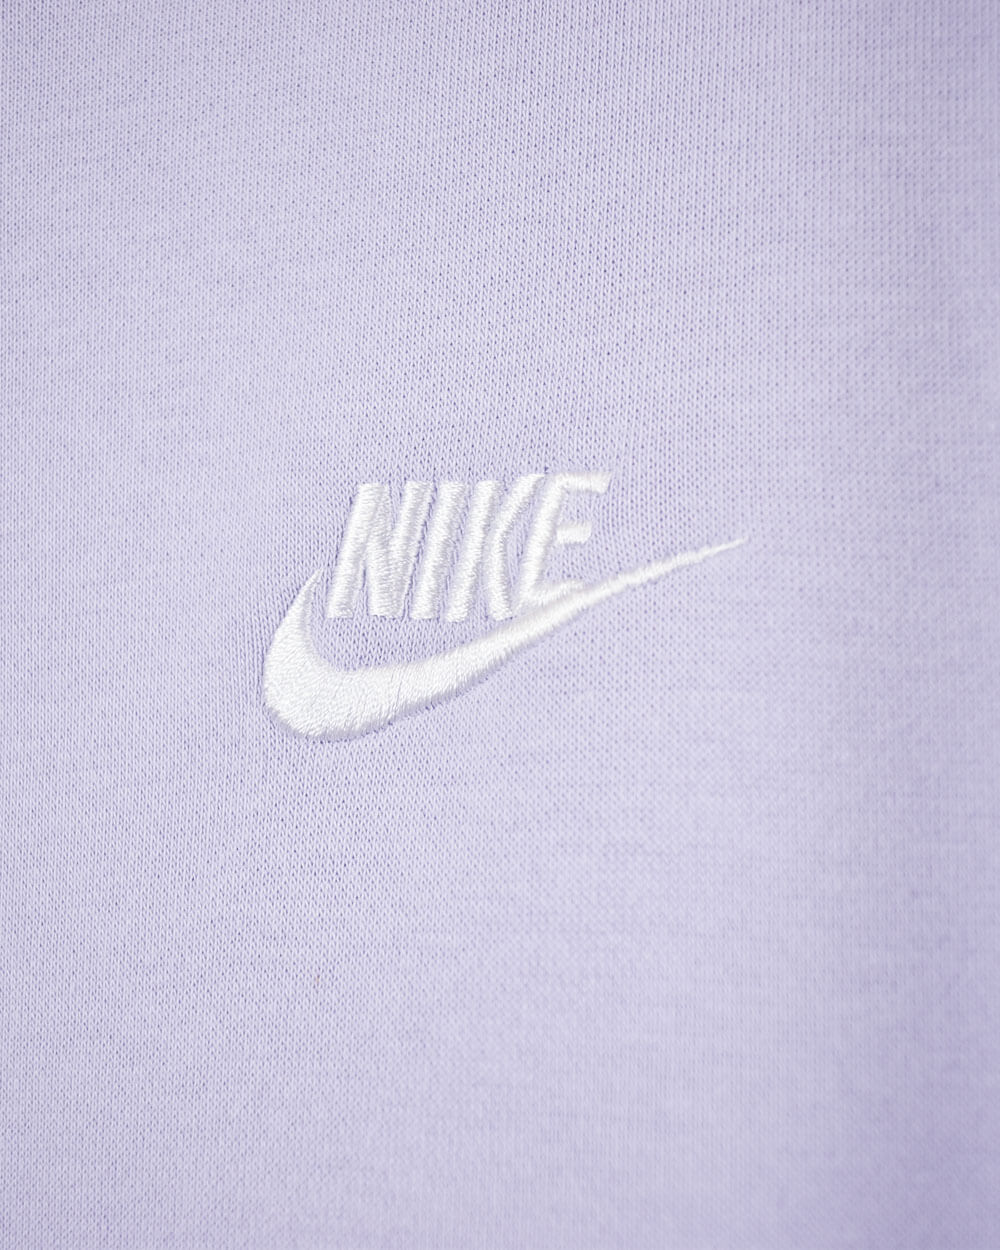 Purple Nike Hoodie - X-Large